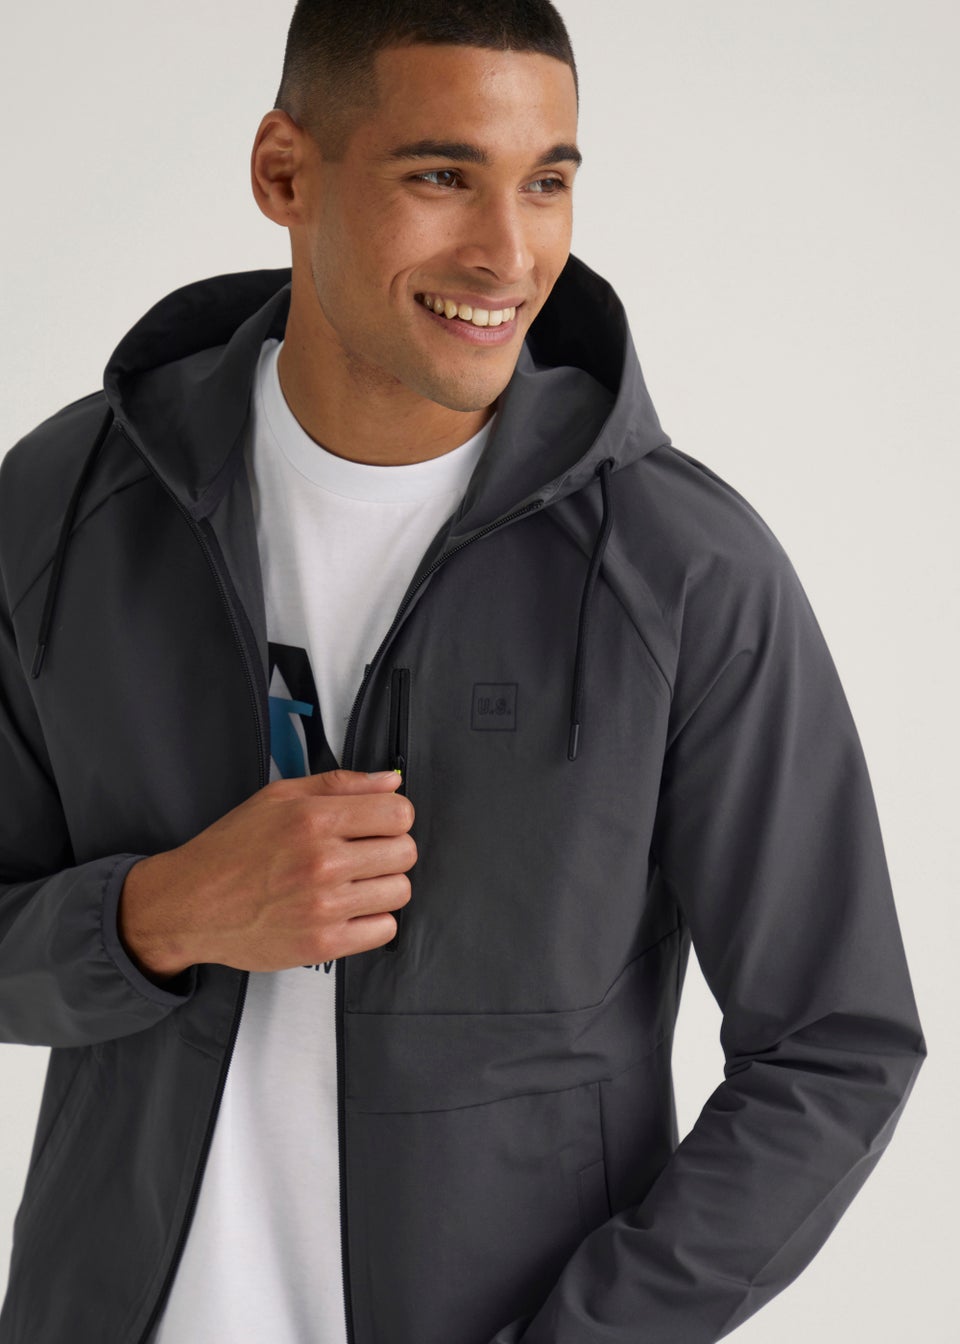 US Athletic Grey Woven Zip Up Jacket - Matalan